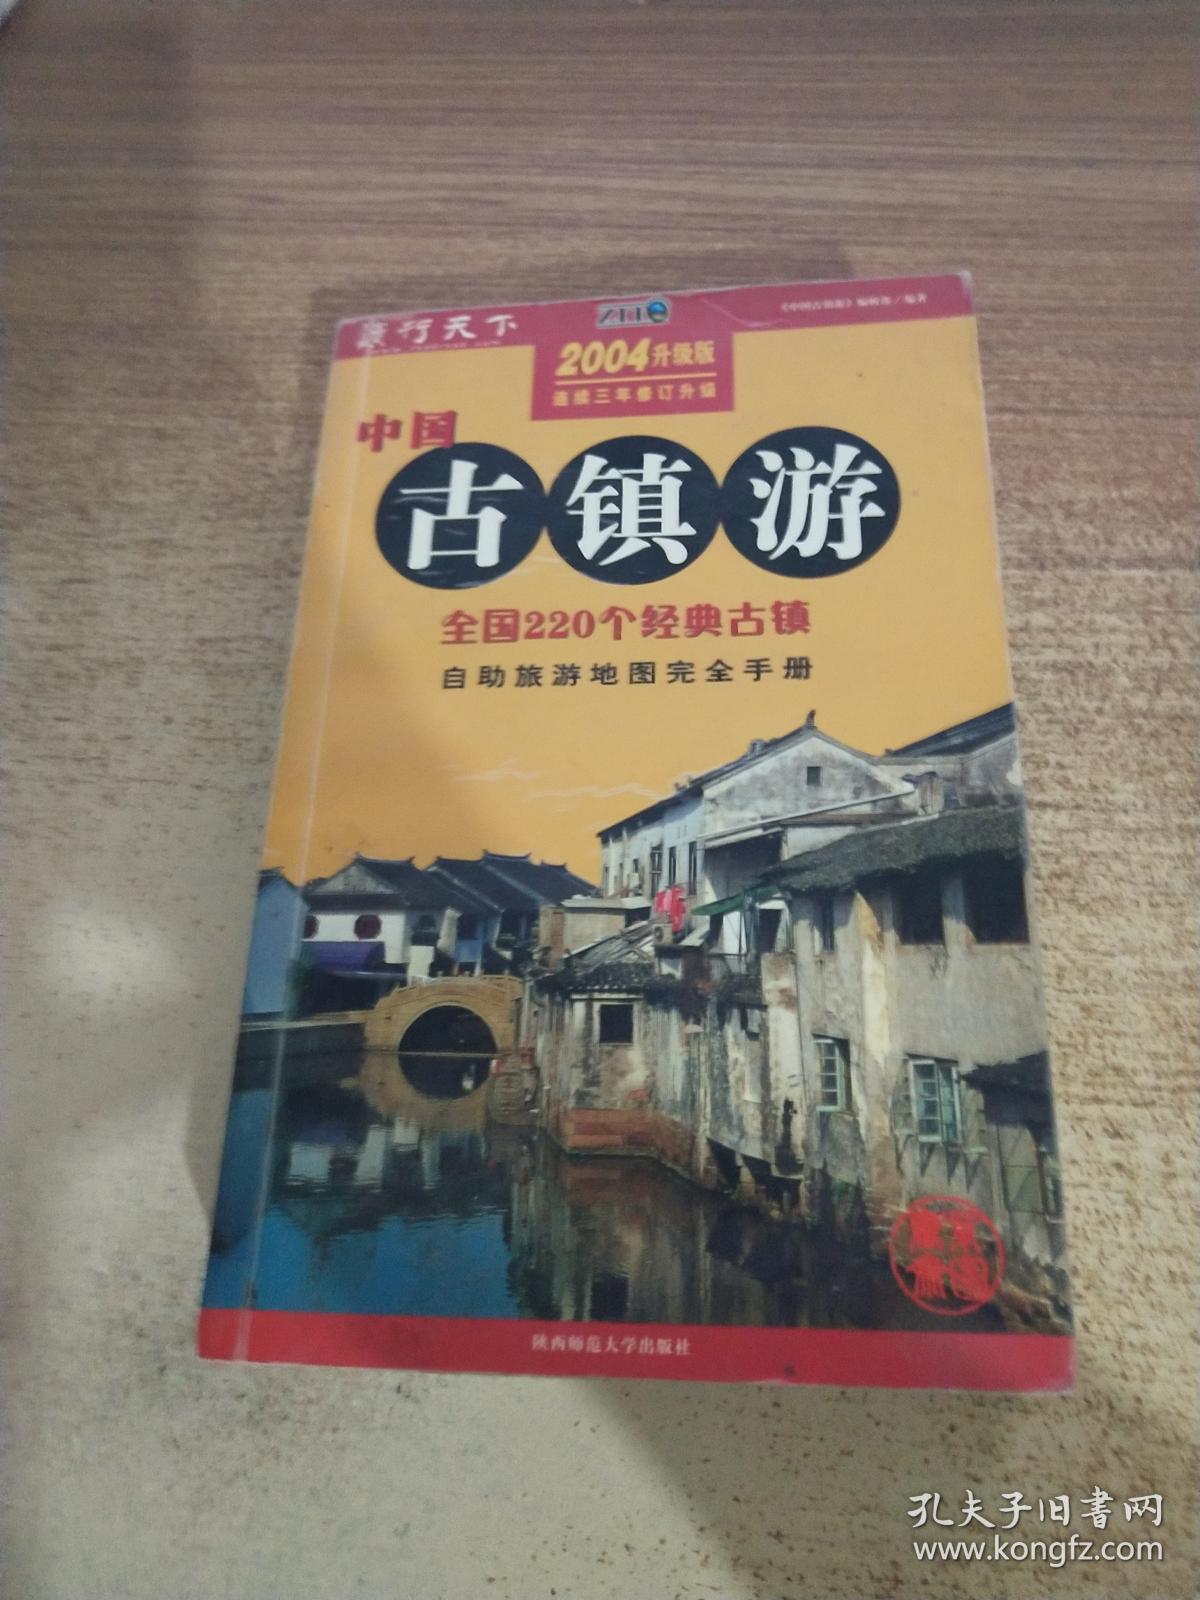 中国古镇游:自助旅游地图完全手册:2004升级版